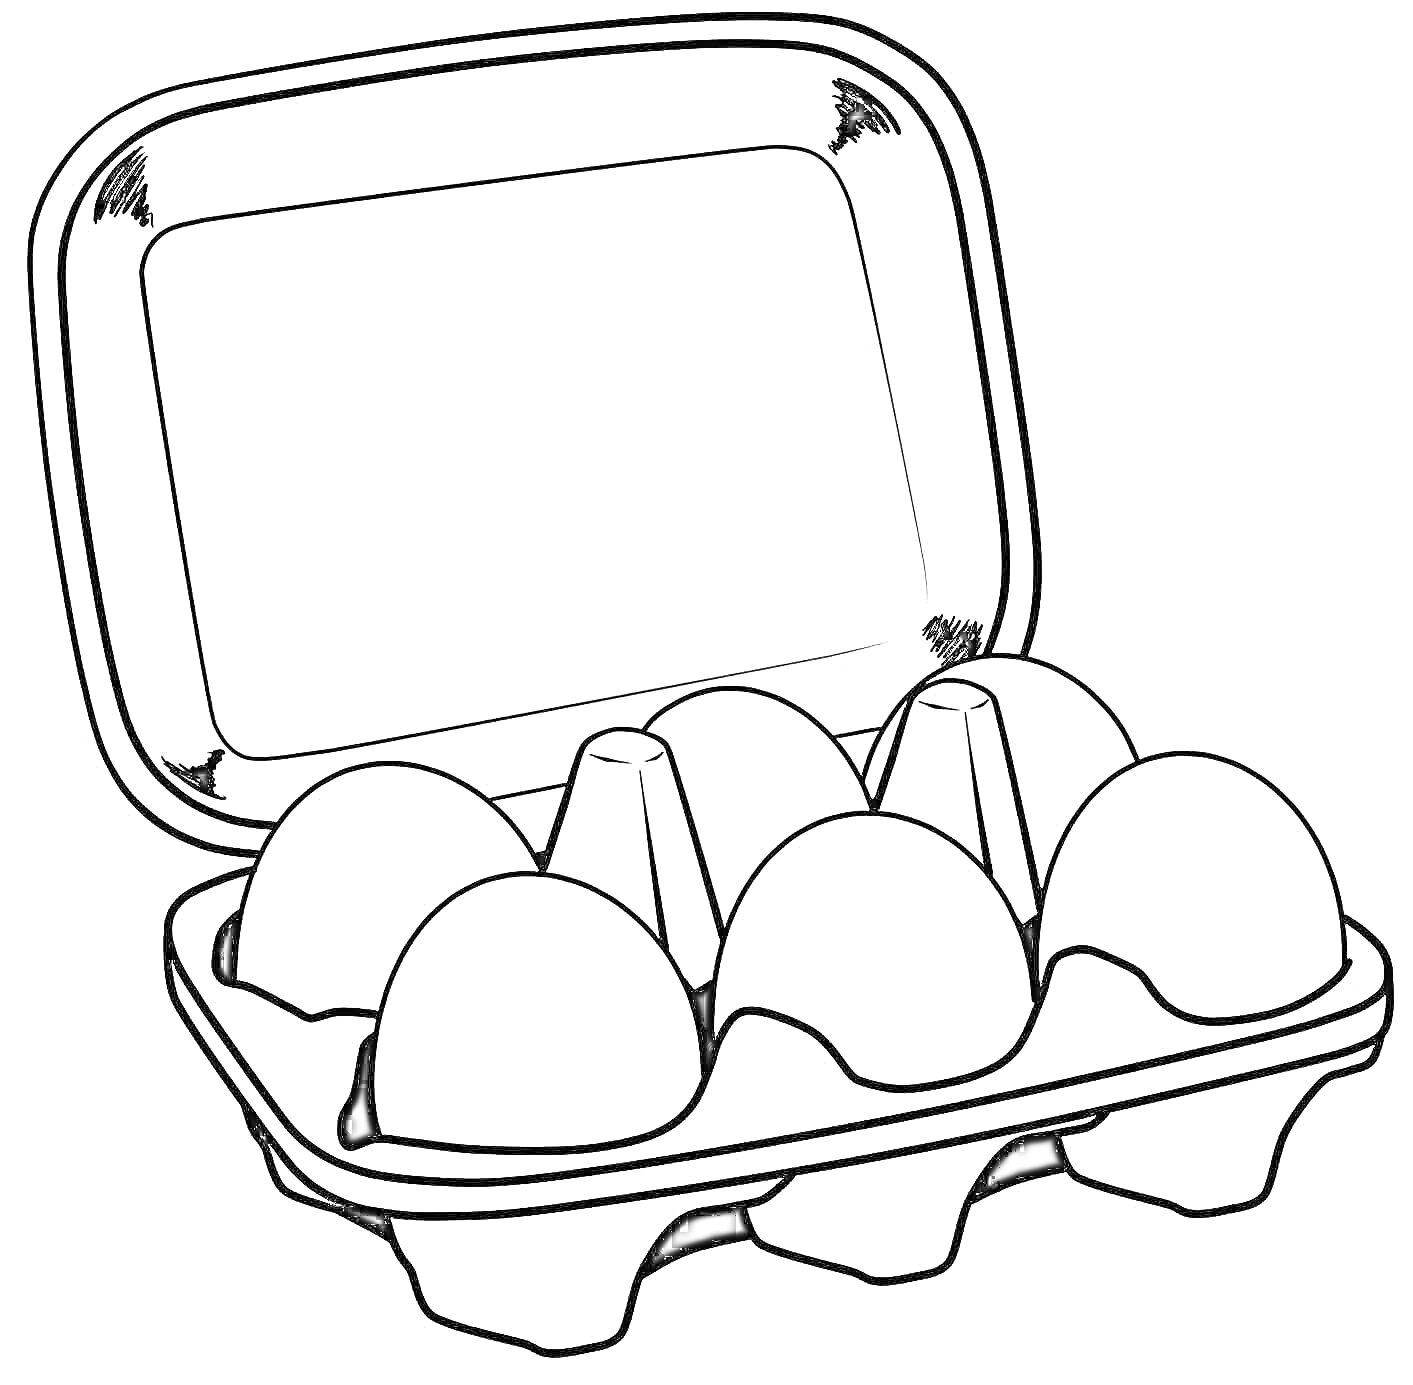 Раскраска Лоток с куриными яйцами (4 яйца)